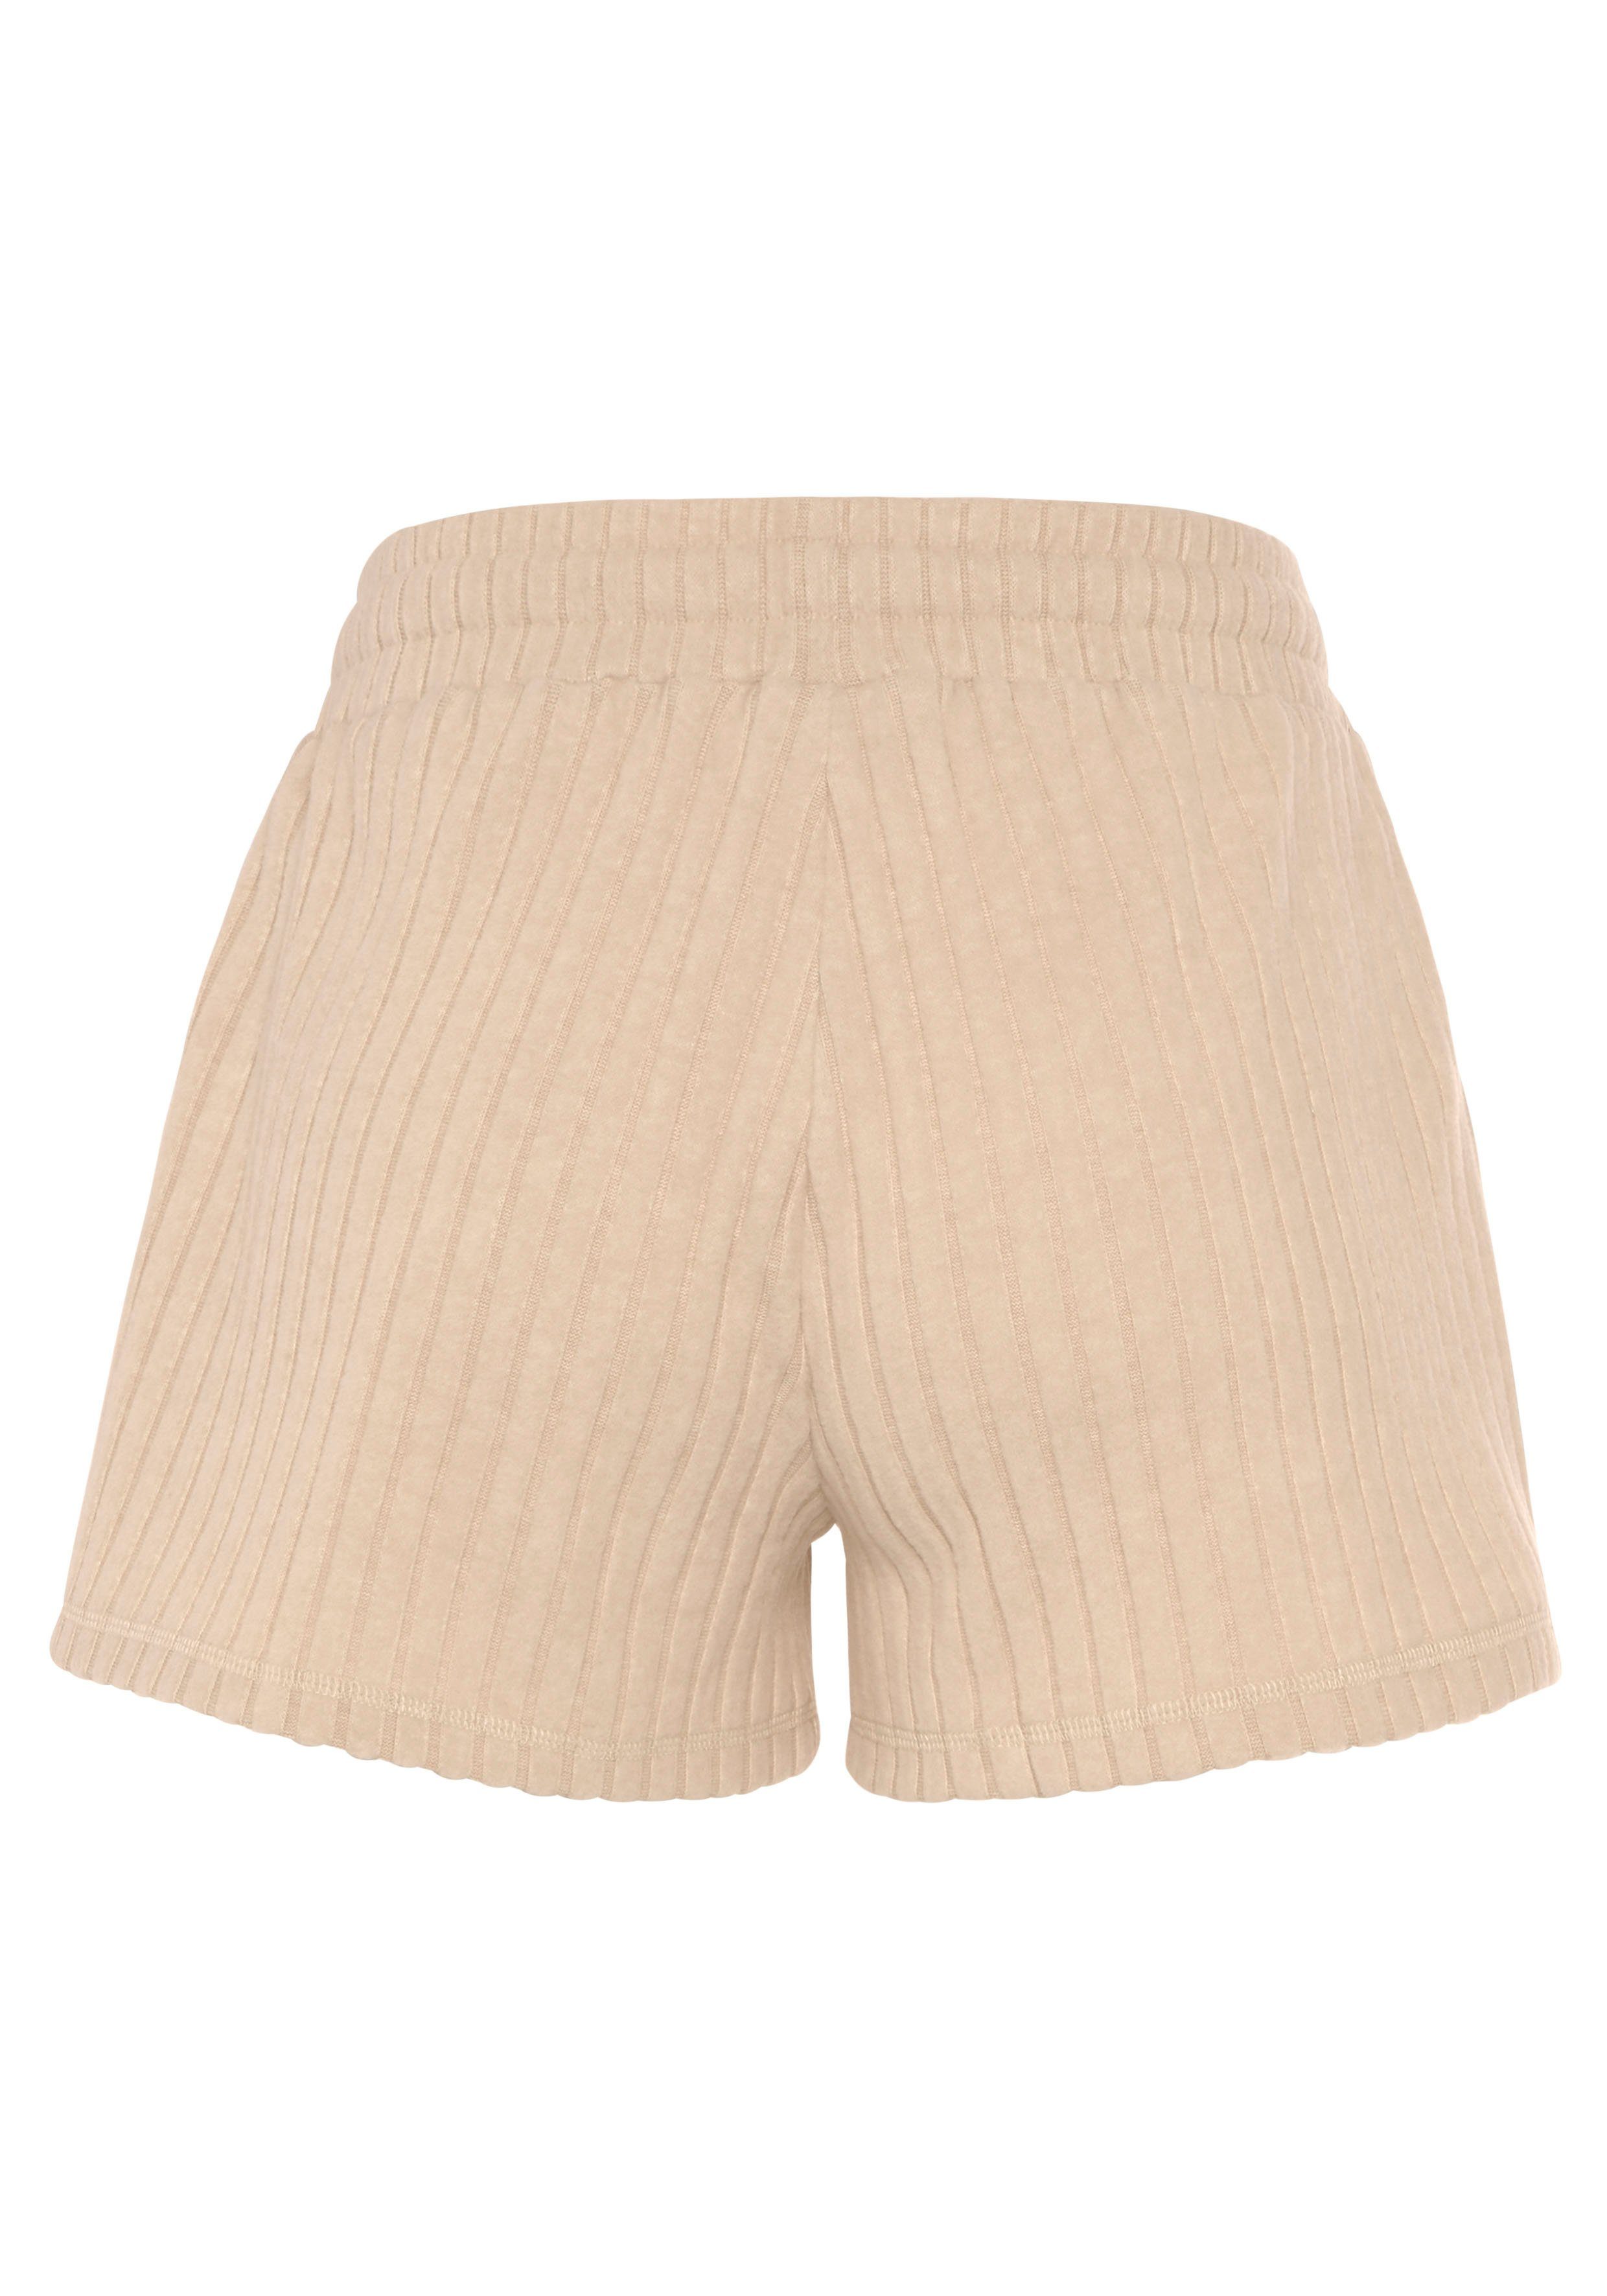 mit meliert -Loungeshorts Shorts in sand-meliert Ripp-Qualität LASCANA Bindeband weicher